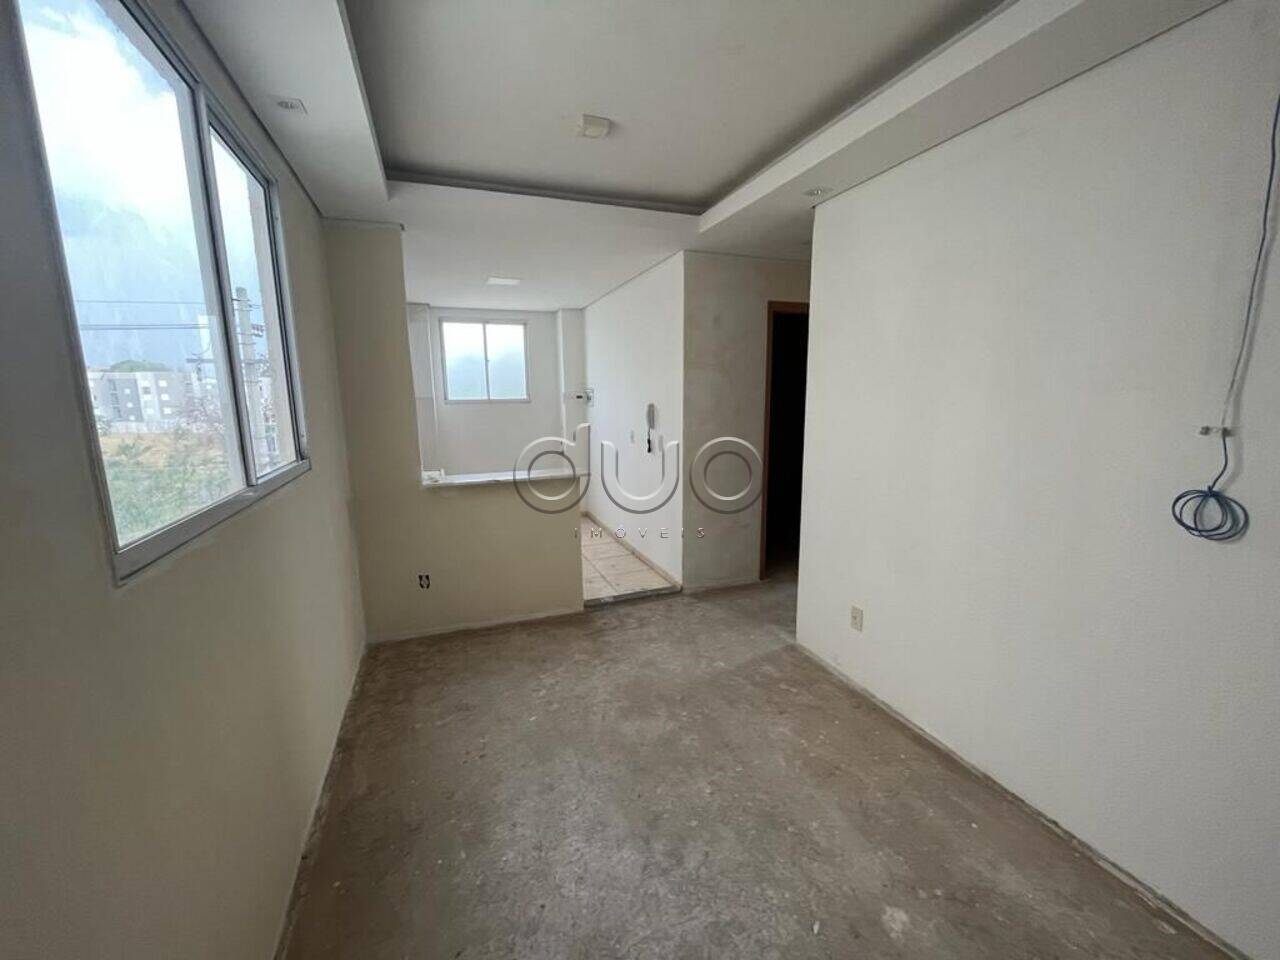 Apartamento com 2 dormitórios à venda, 44 m² por R$ 149.000 - Campestre - Piracicaba/SP